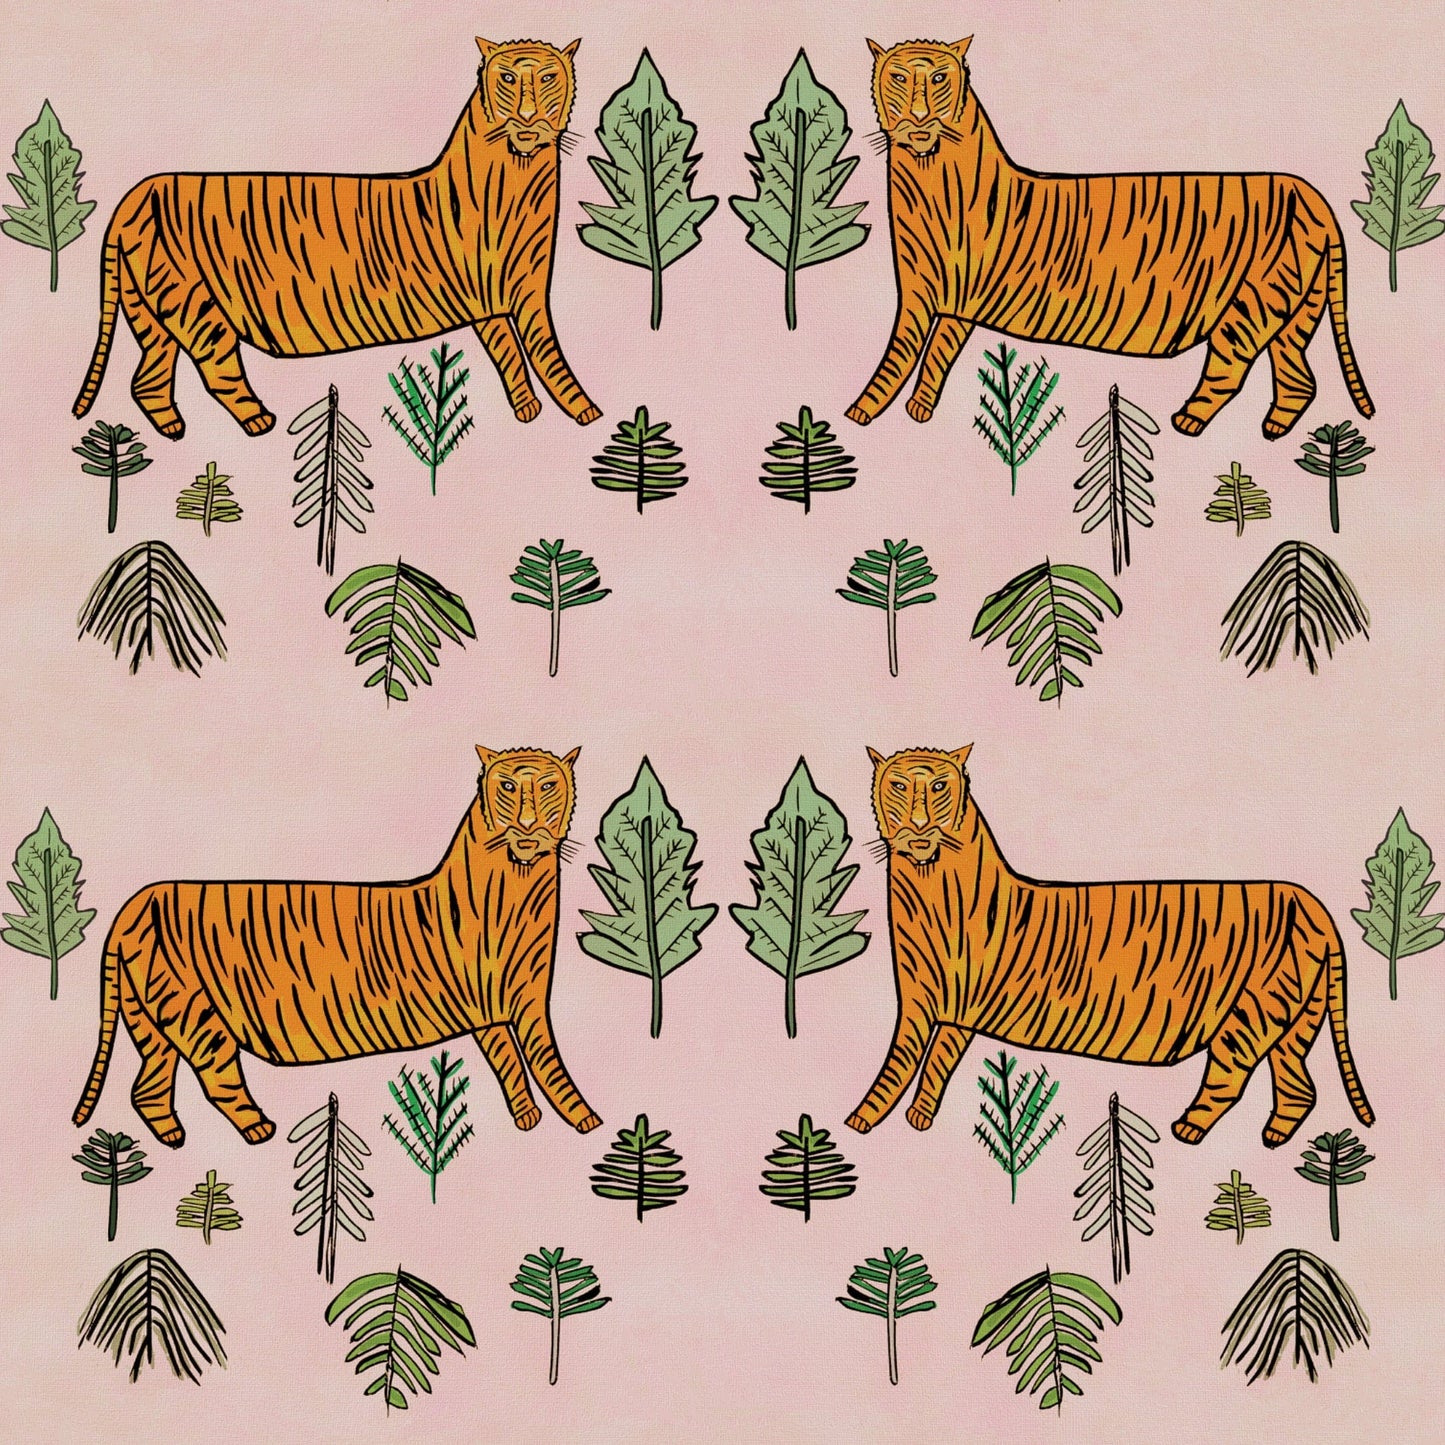 WALLPAPER ROLL Tiger Tiger Wallpaper- Morganite